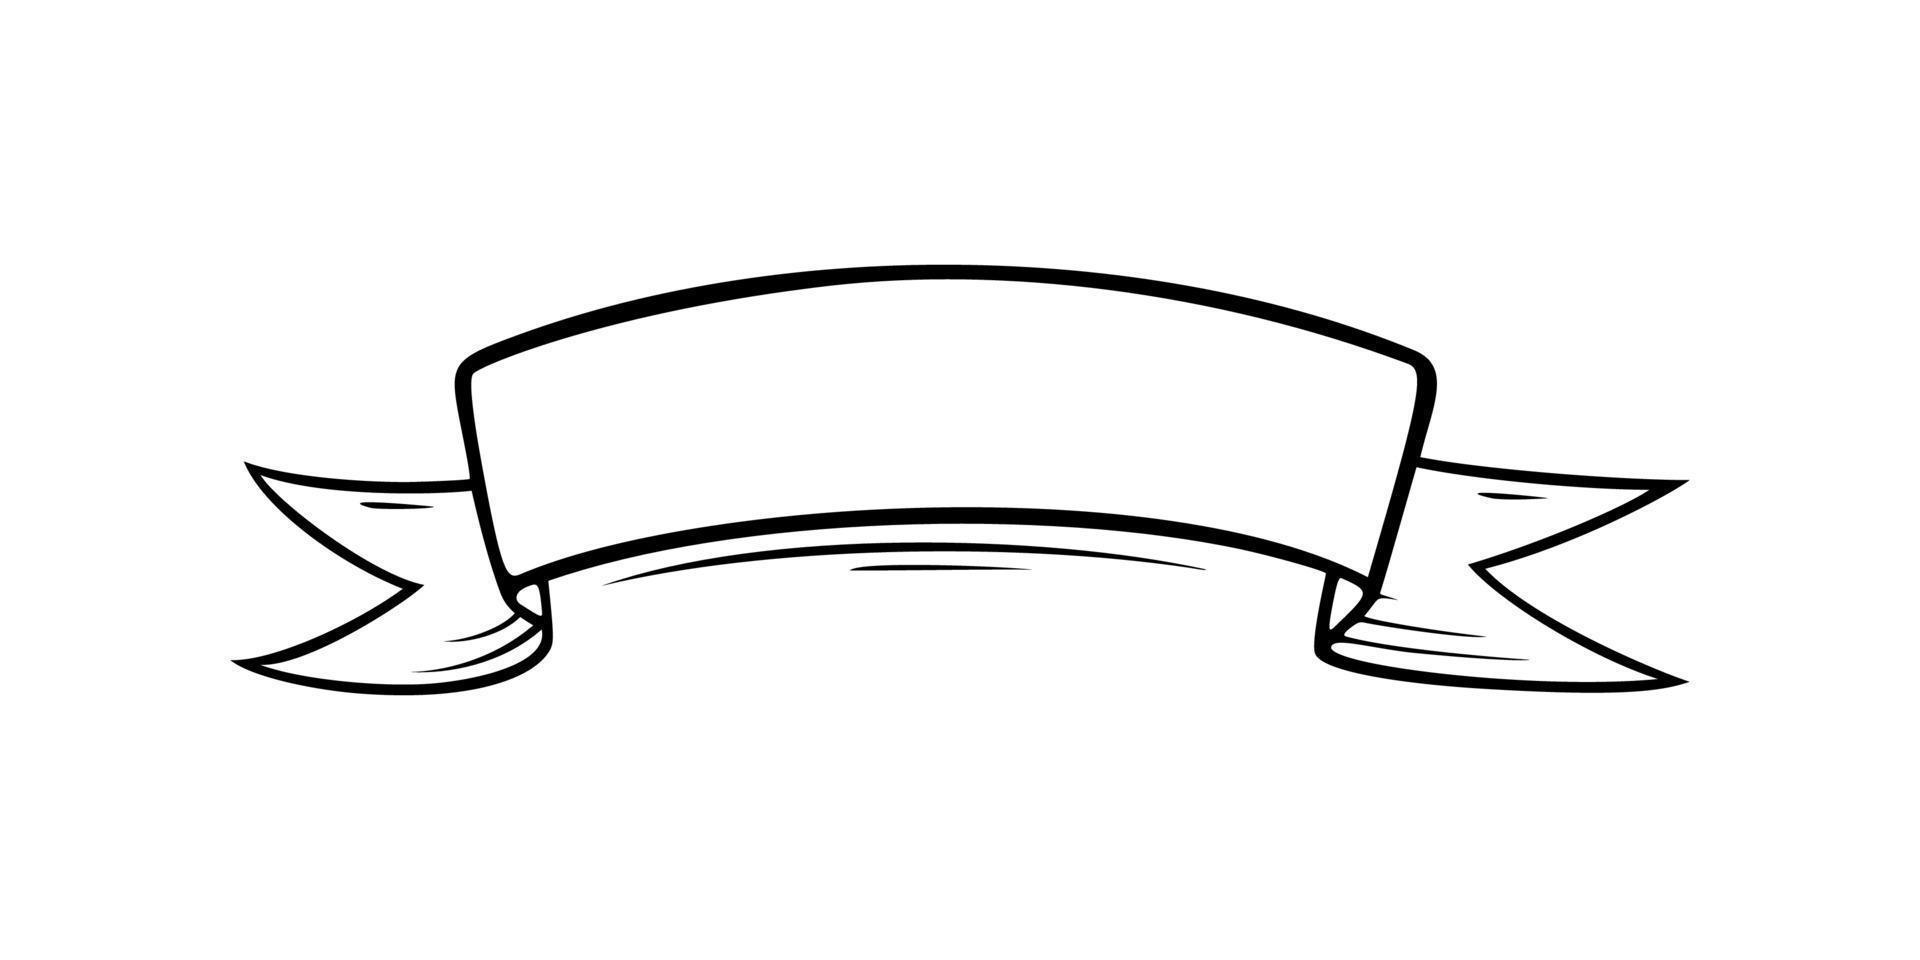 Skizzenbandetikett. Zierband im Doodle-Stil für Banner. vektorillustration lokalisiert im weißen hintergrund vektor